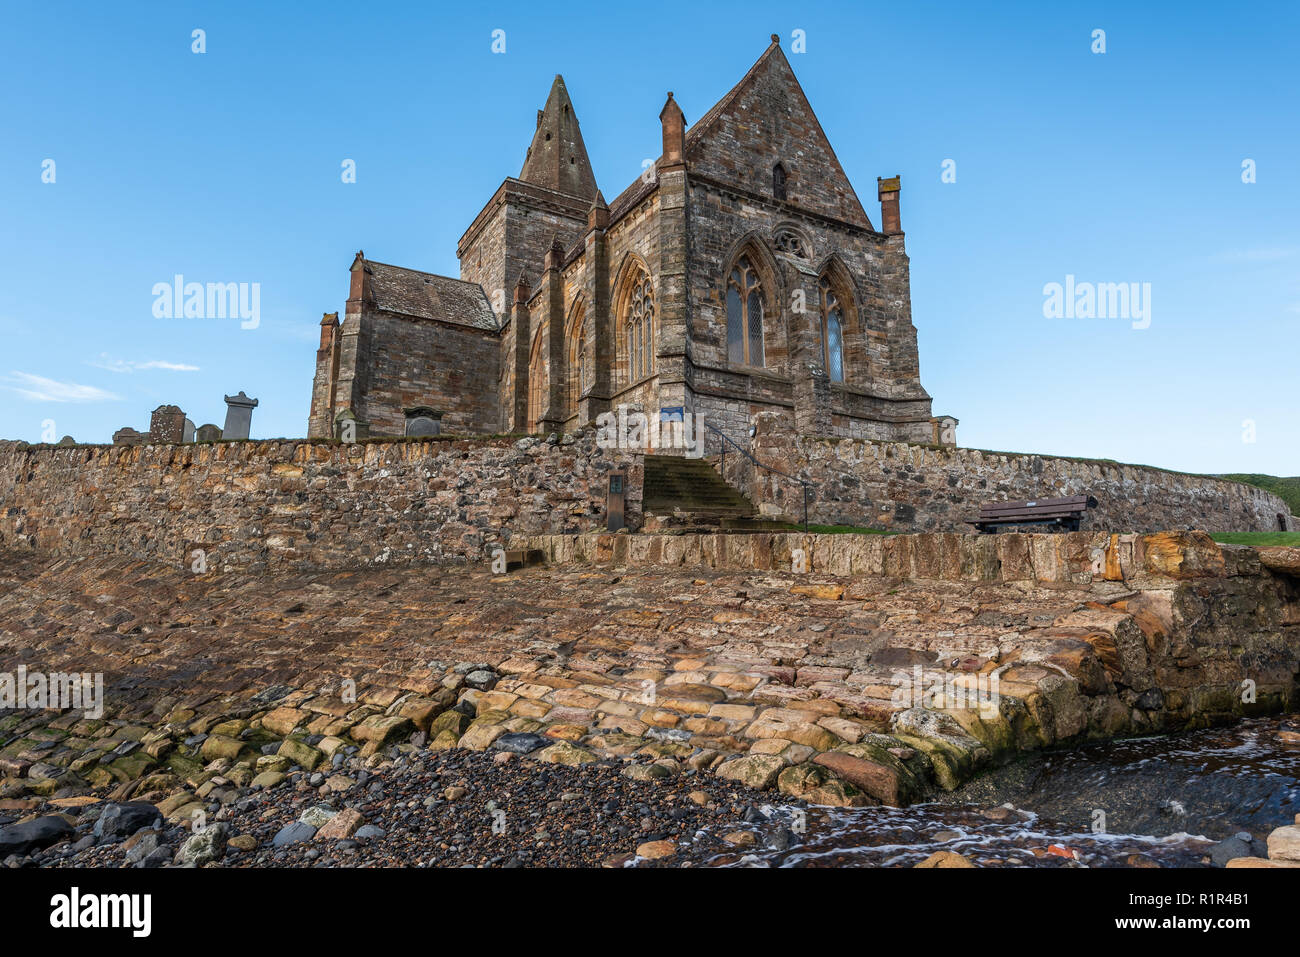 St Monans iglesia data de tiempos medievales y está situado en una posición aislada en el borde mismo del mar del Norte en el East Neuk de Fife, Scotlan Foto de stock